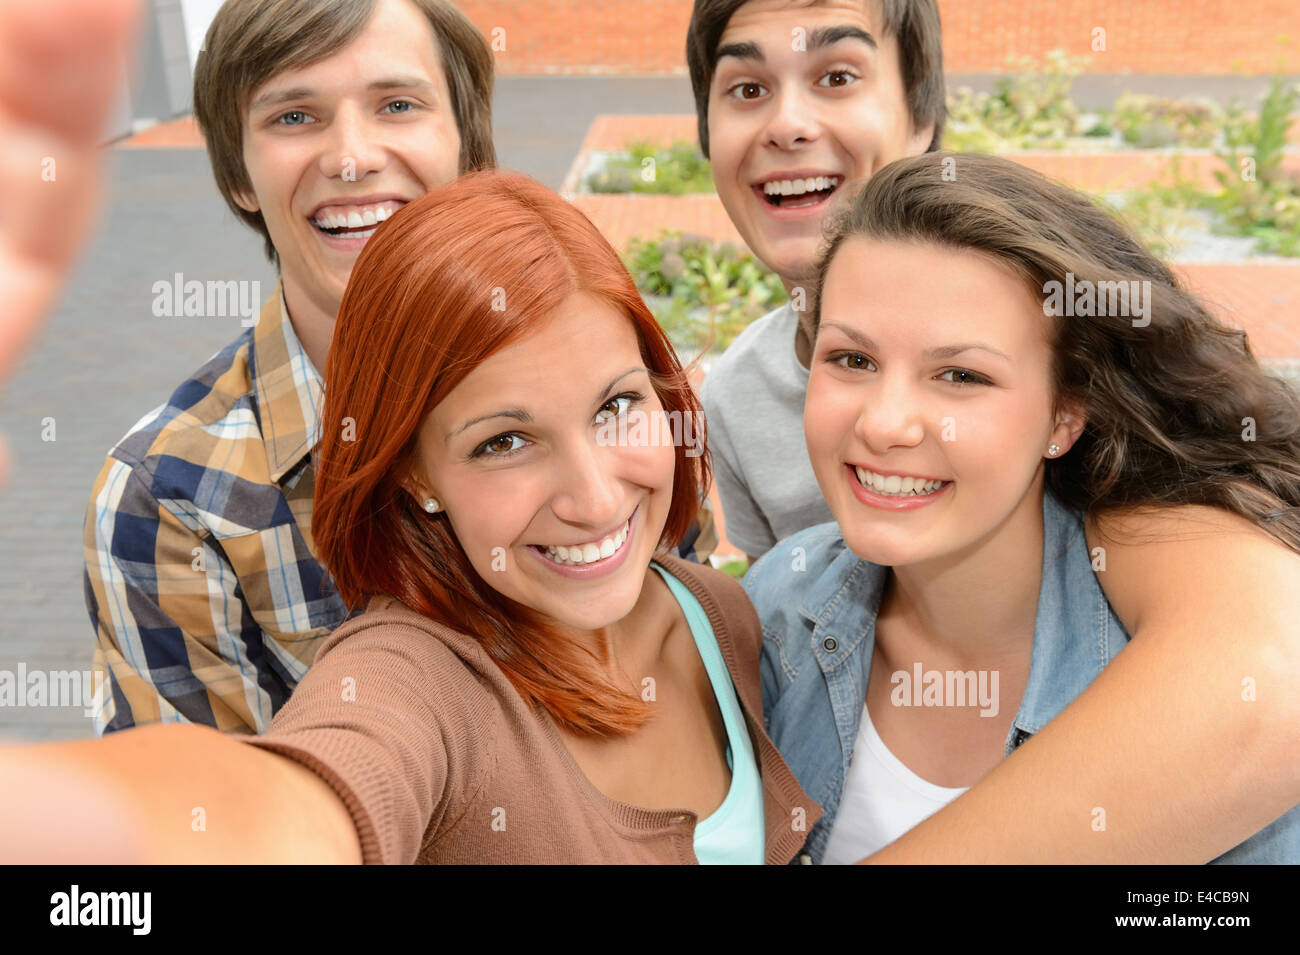 Groupe d'étudiants amis adolescents en tenant l'appareil photo de rire de selfies Banque D'Images